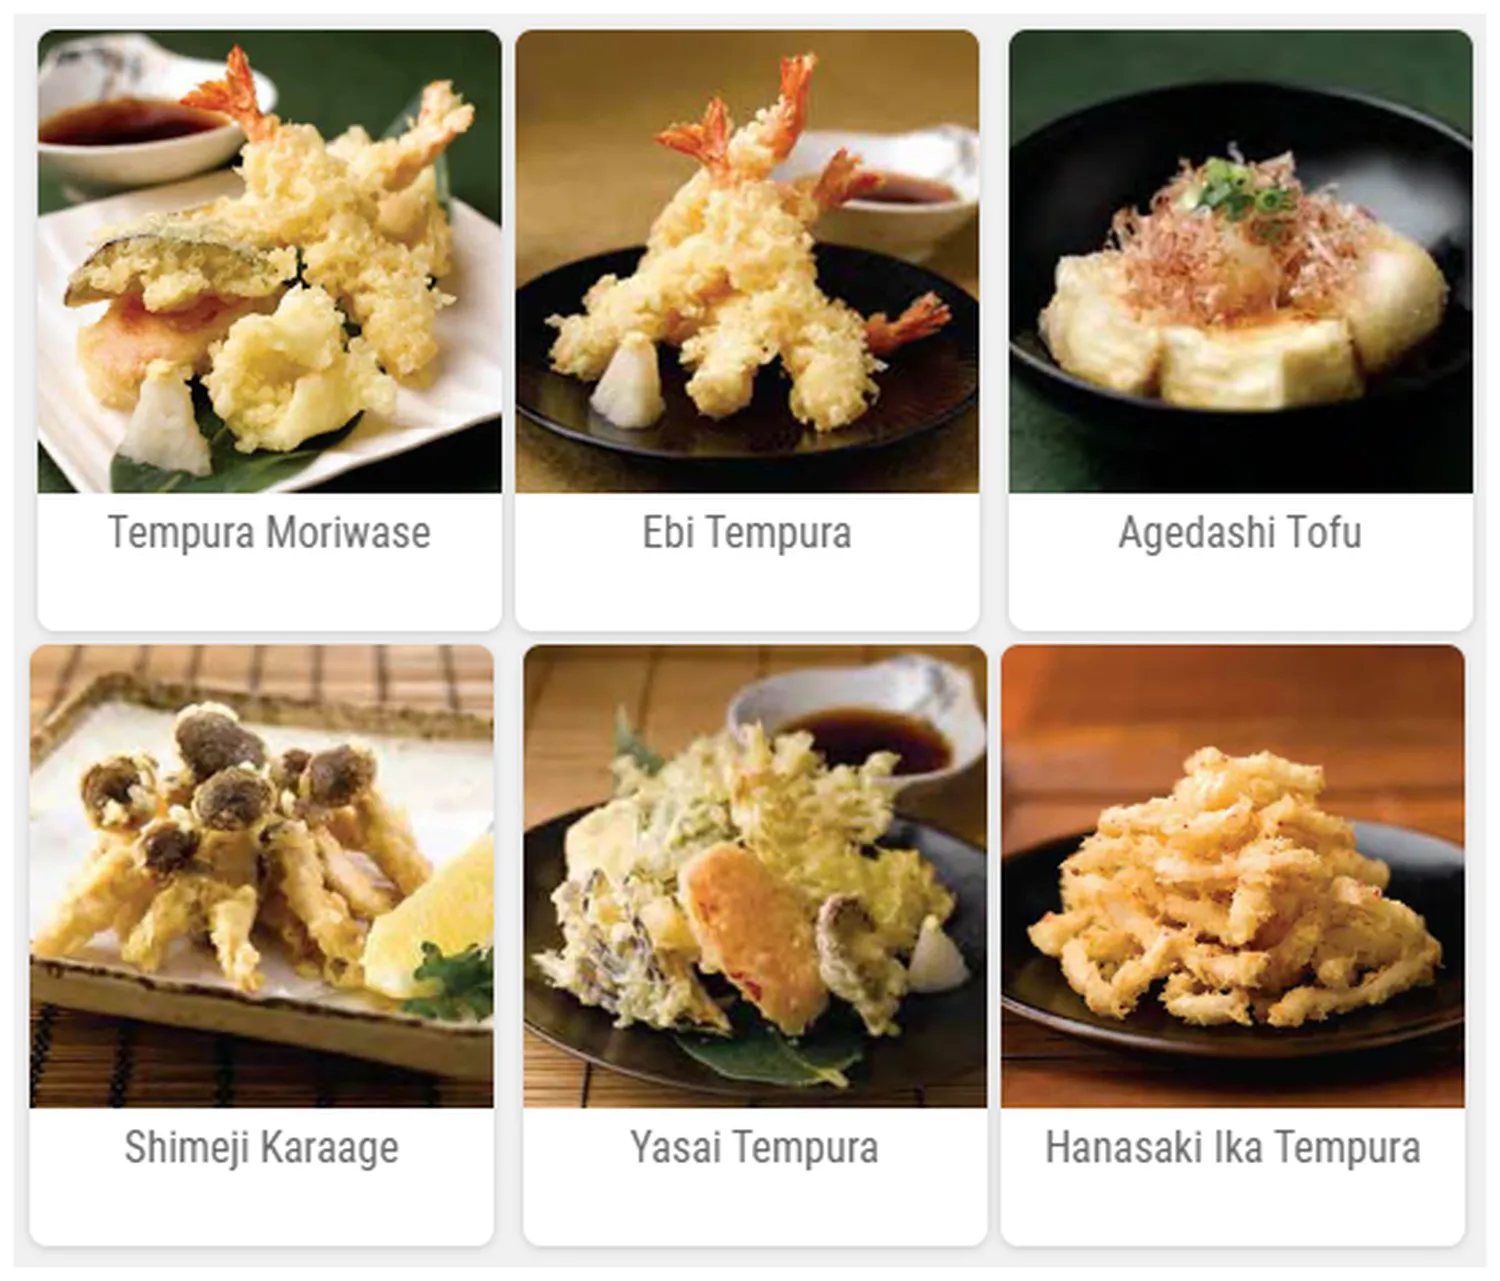 sushi zanmai menu malaysia tempura